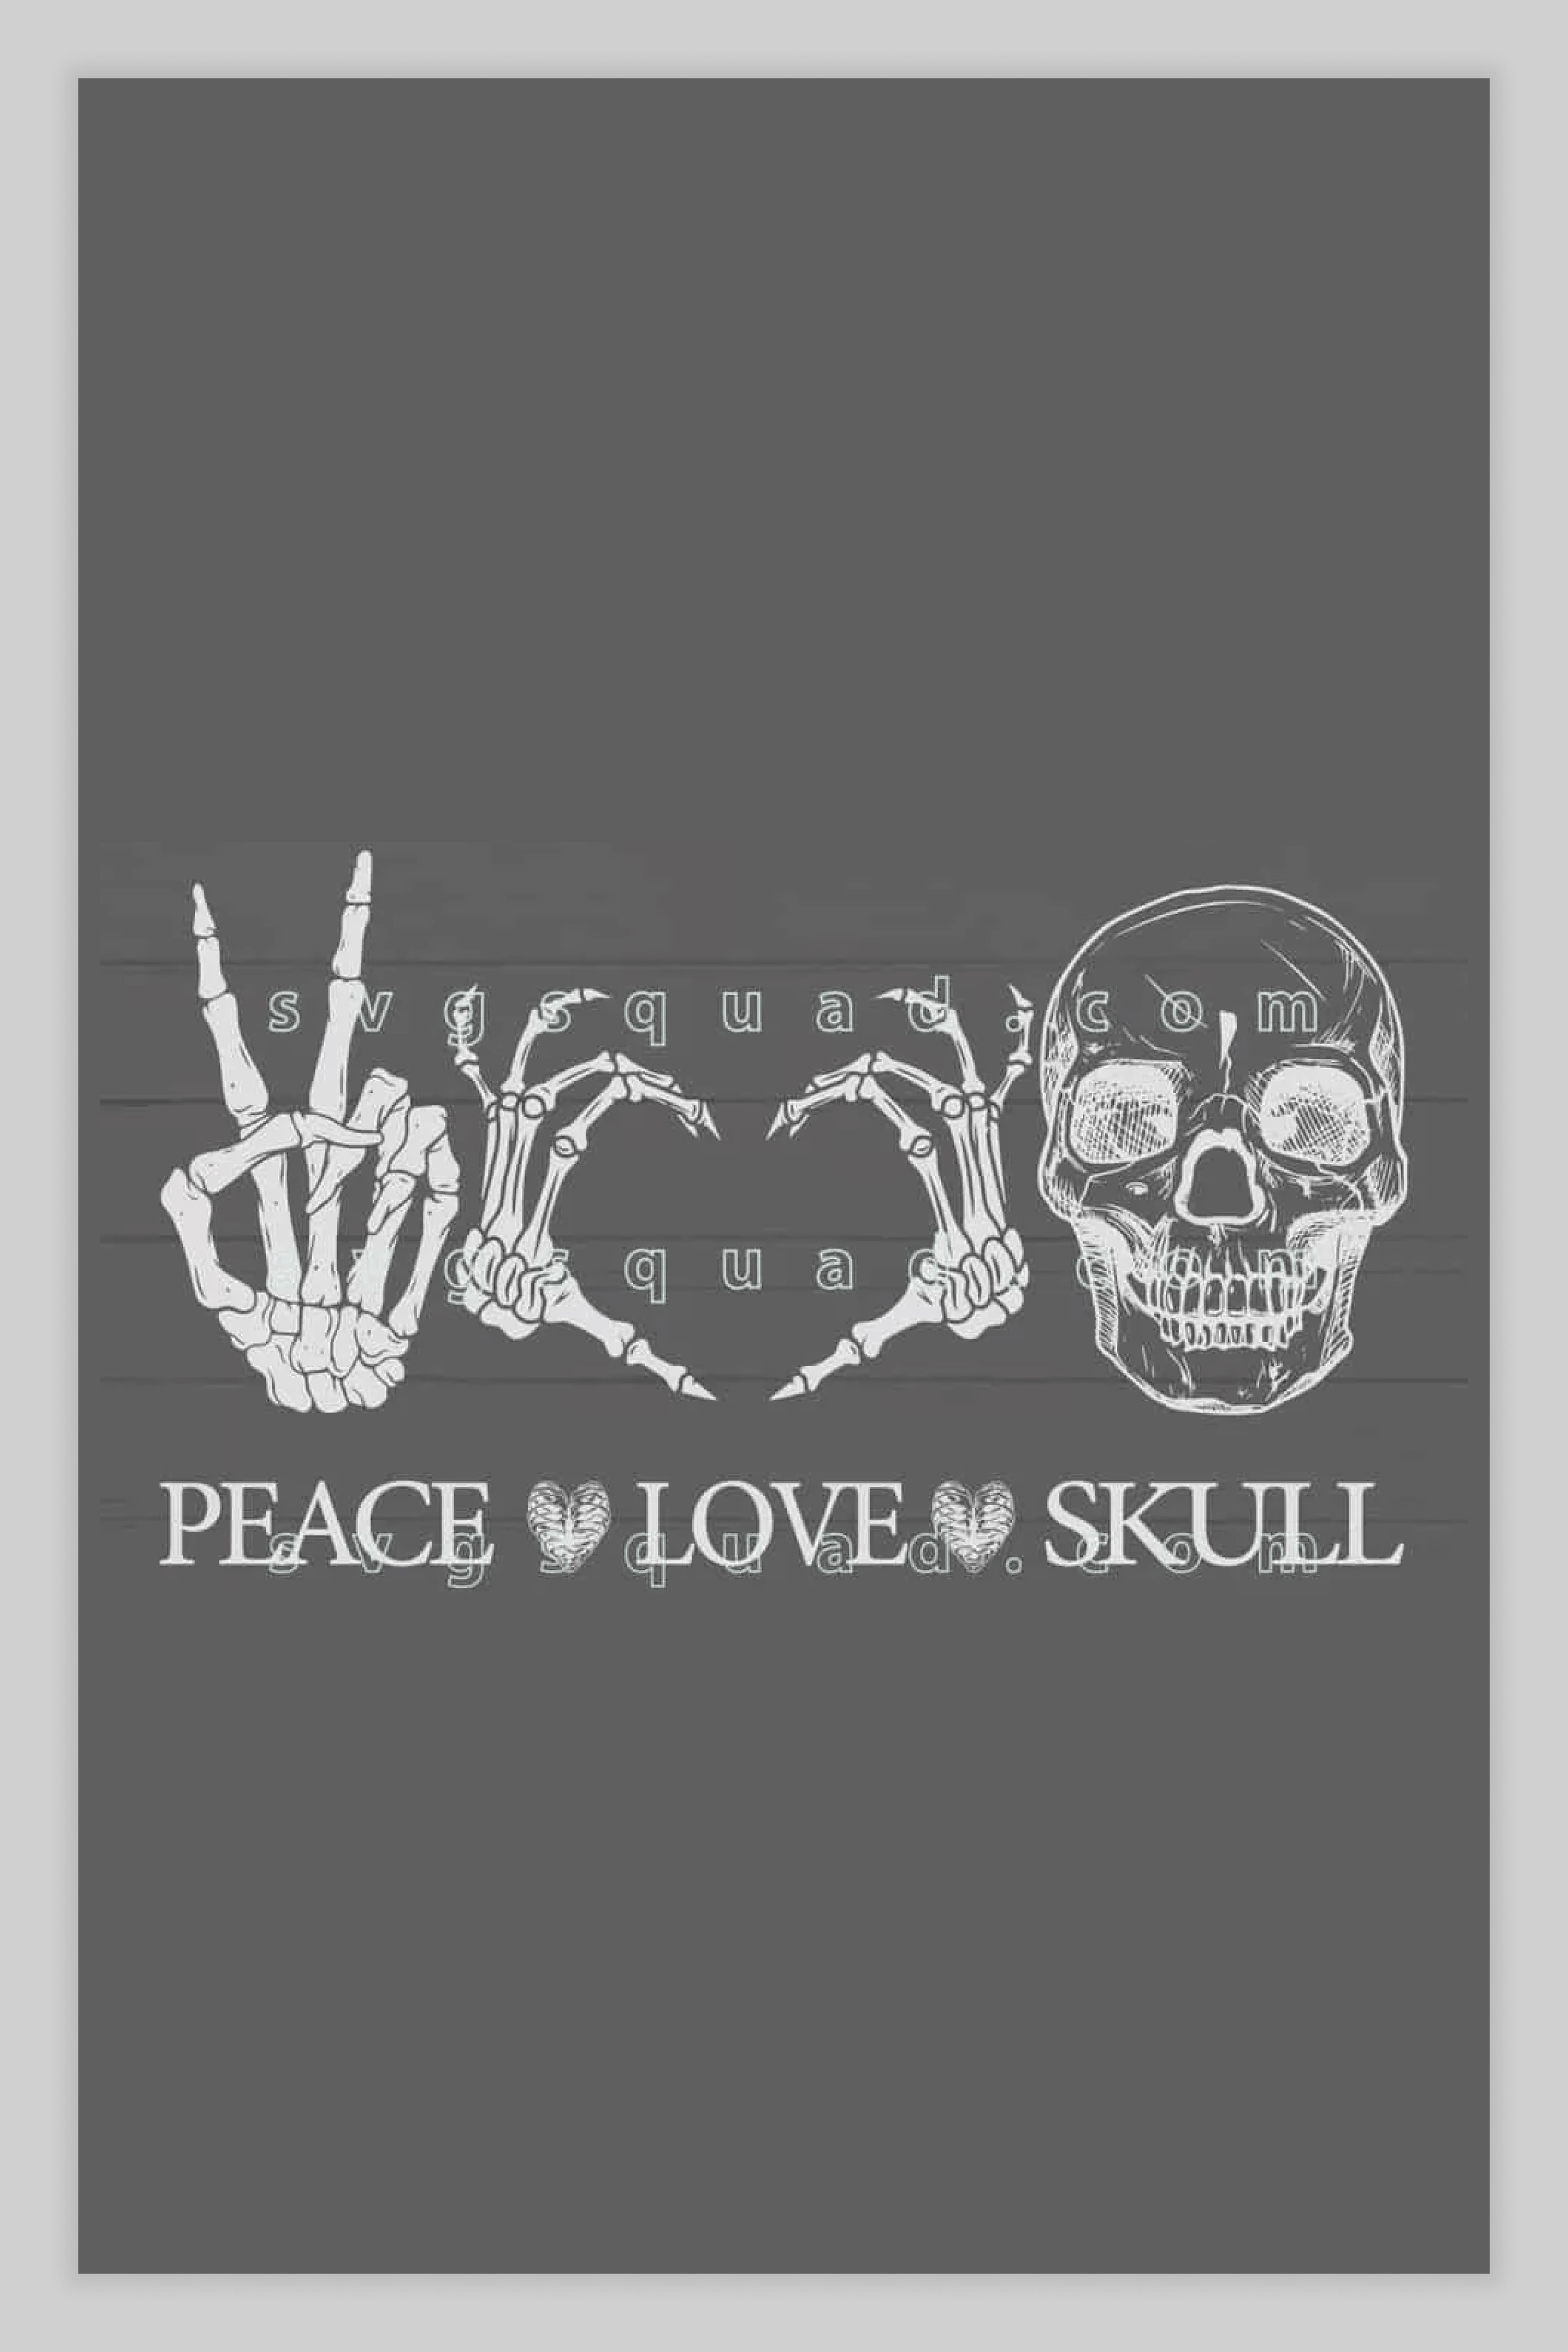 Skull Brand Logo SVG  Skull Brand Logo vector File